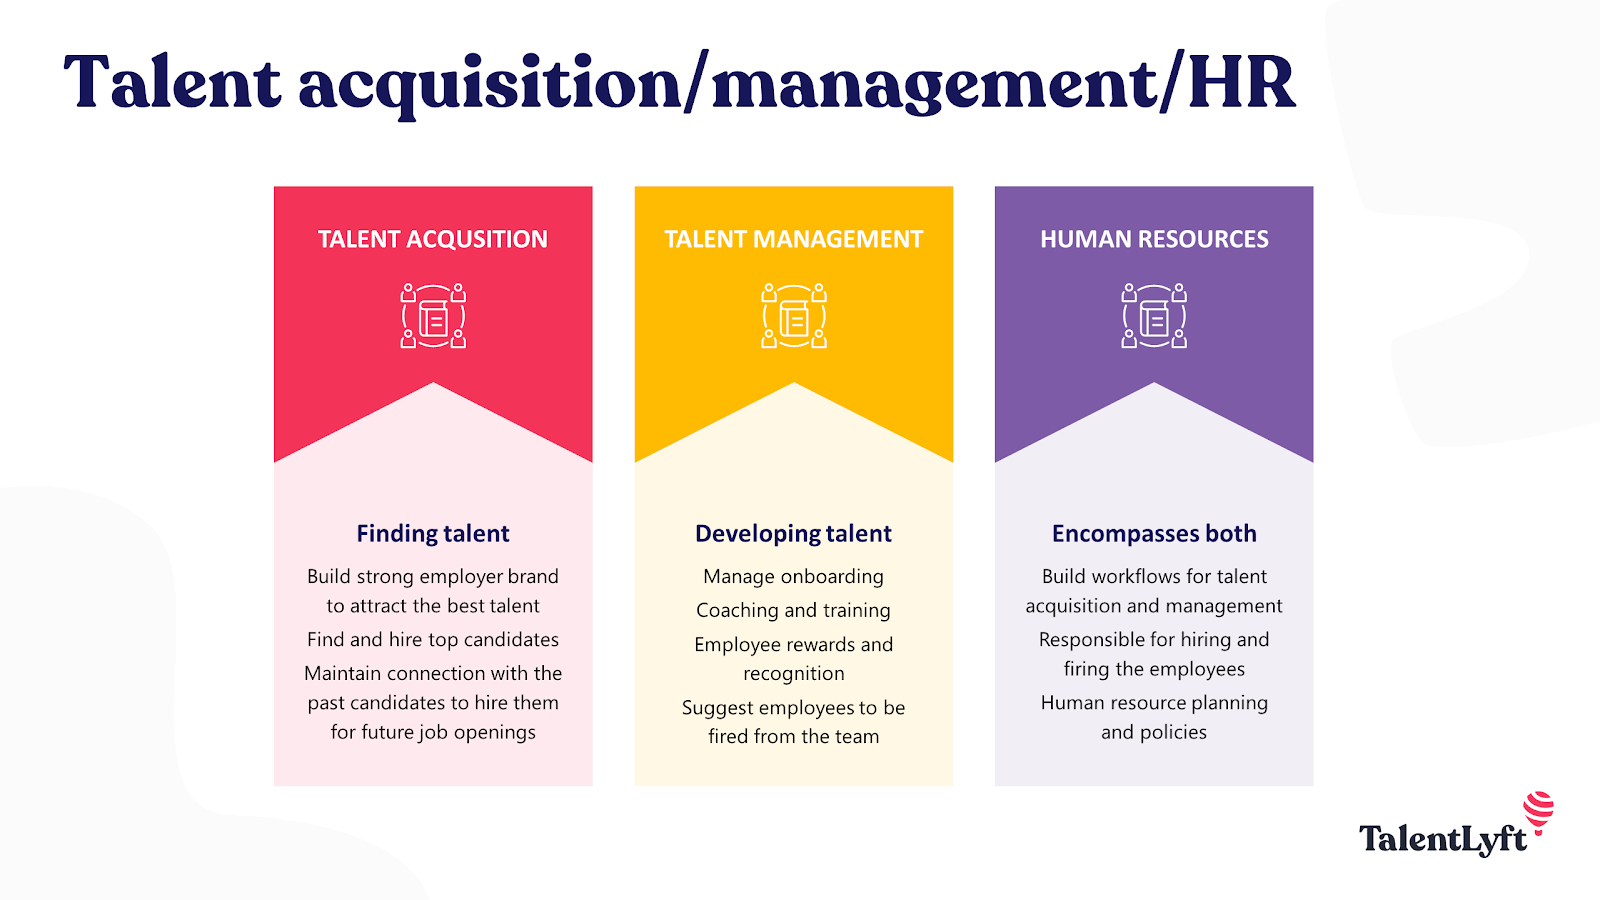 Talent acqusition vs talent management vs HR